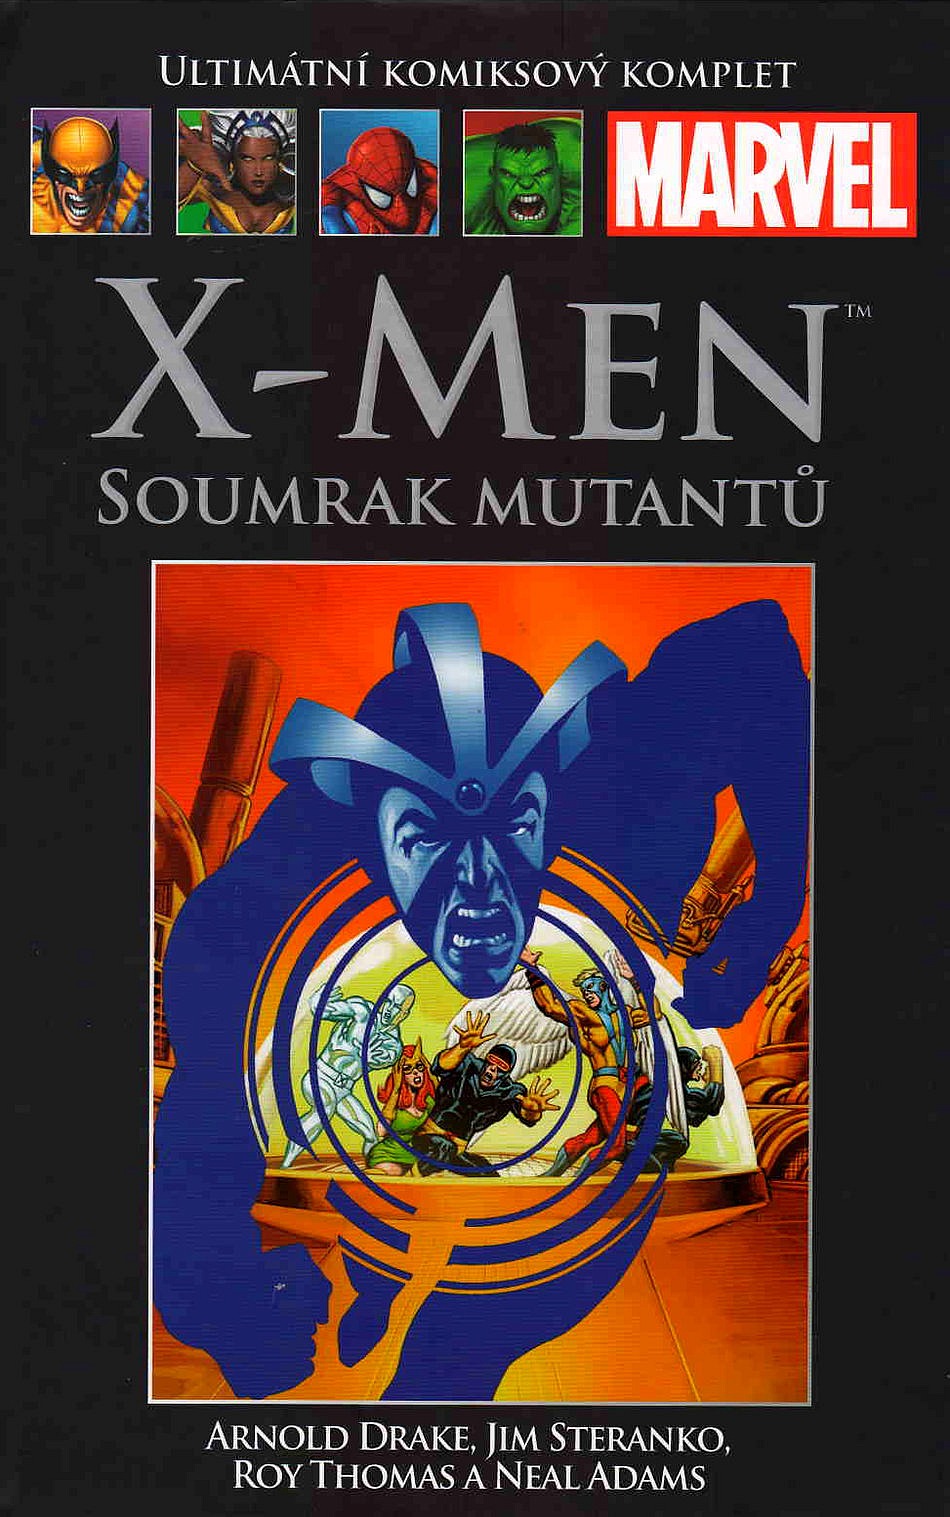 X-Men: Soumrak mutantů